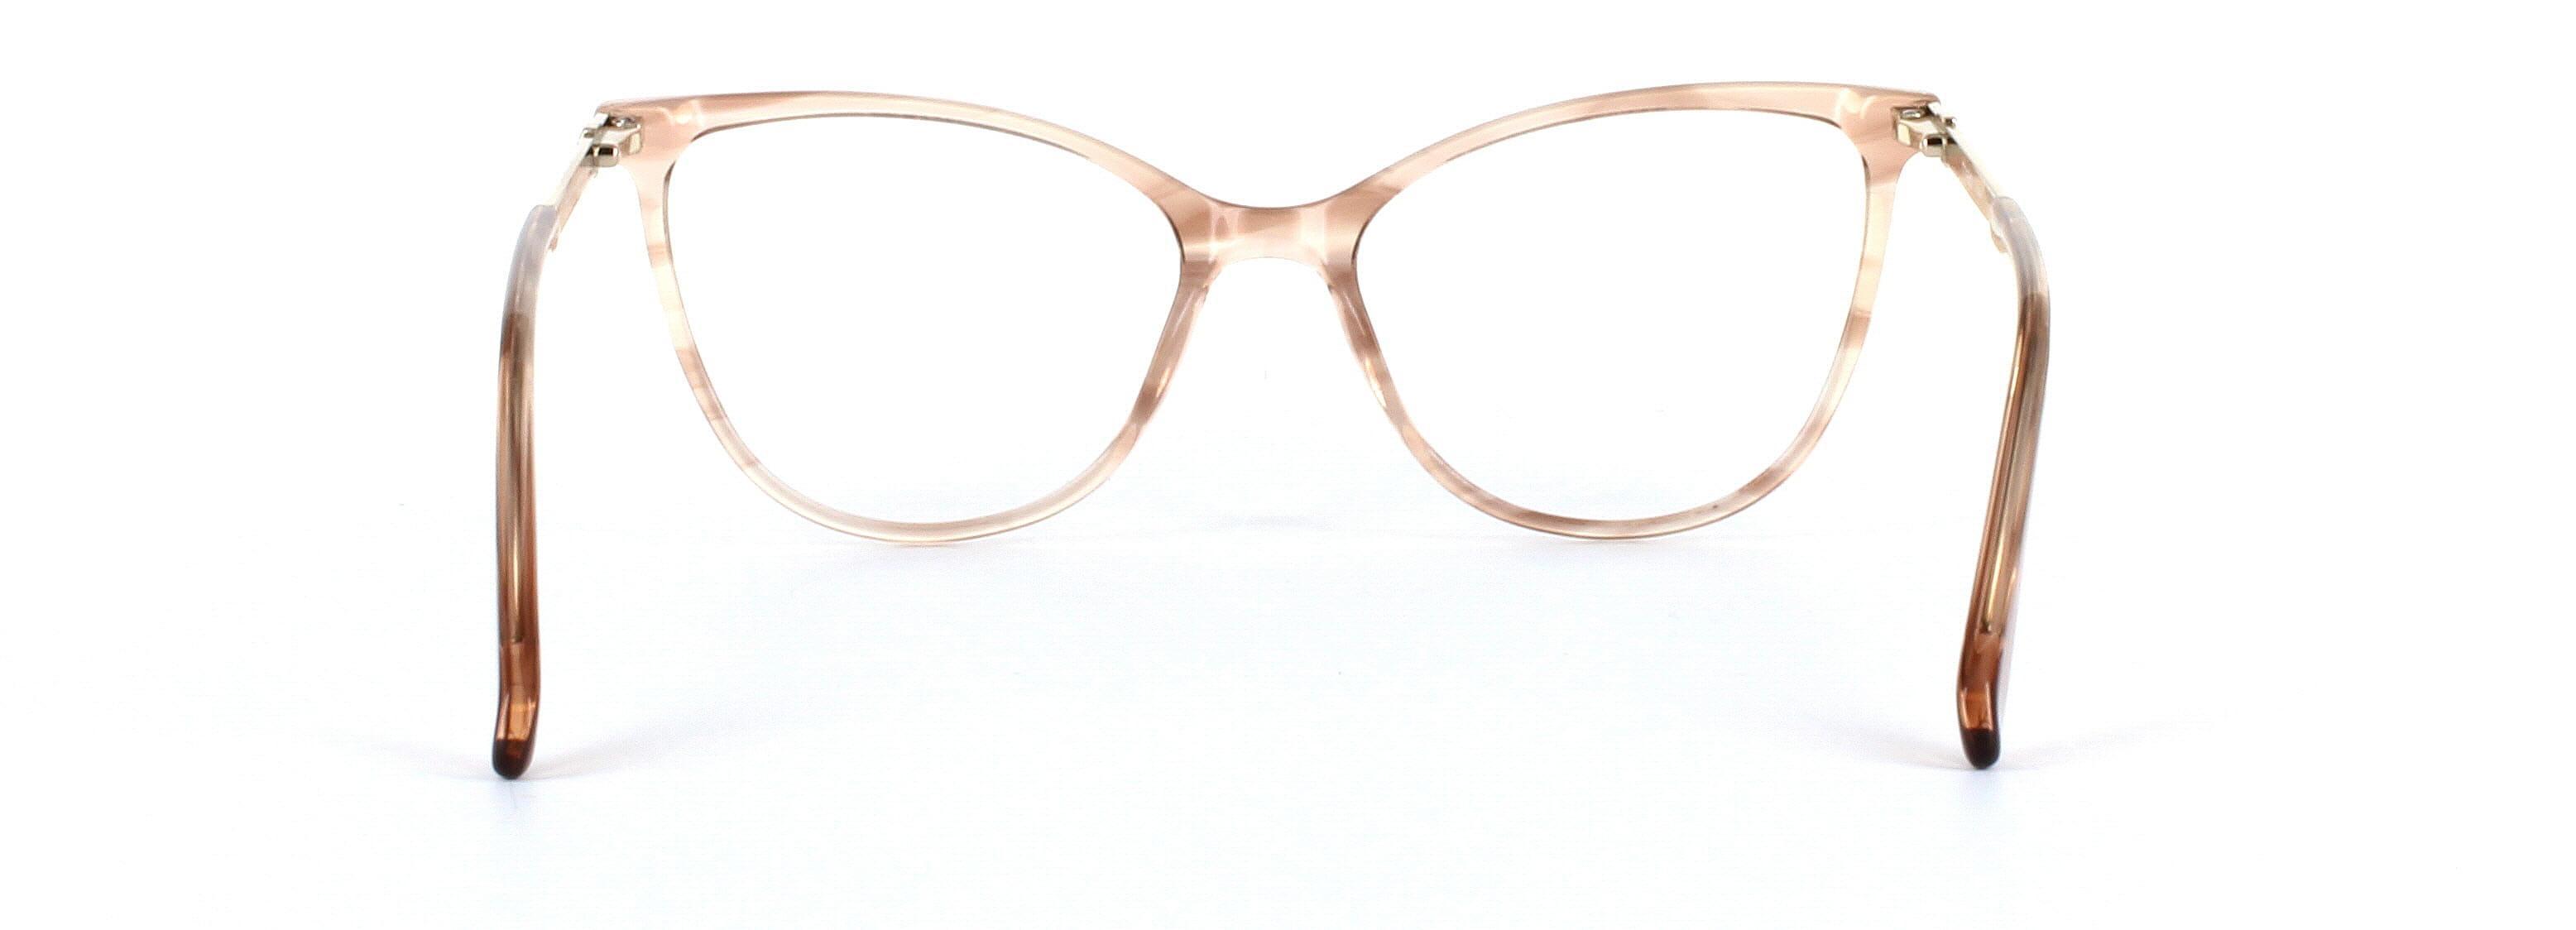 Callie Brown Crystal Full Rim Cat Eye Acetate Glasses - Image View 3